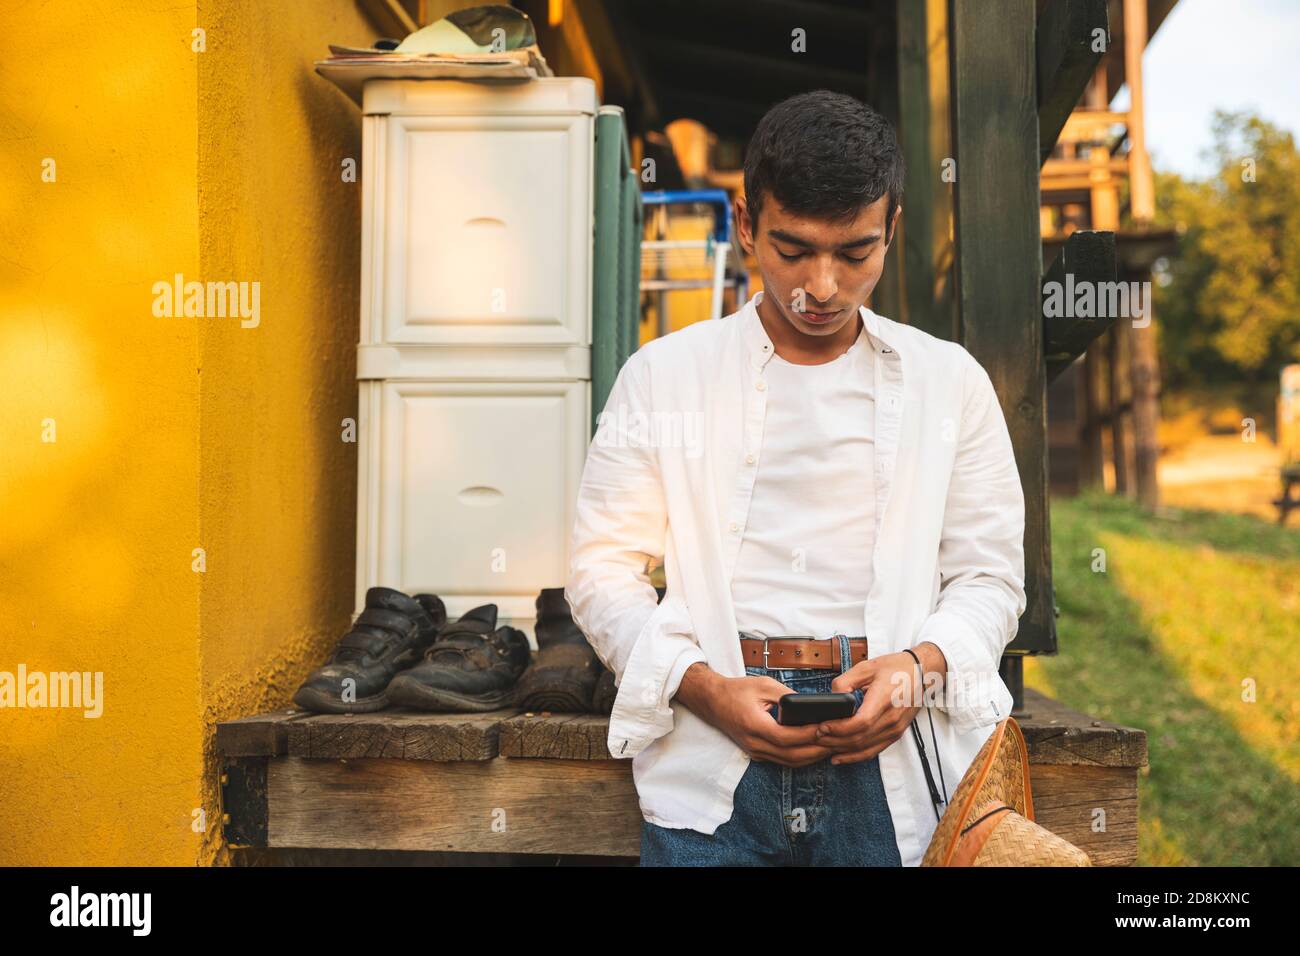 Ein junger Mann, der sich in der Nähe alter Schuhe ausruhen und Smartphone für Messaging verwenden kann. Modekonzept Fotografie Stockfoto